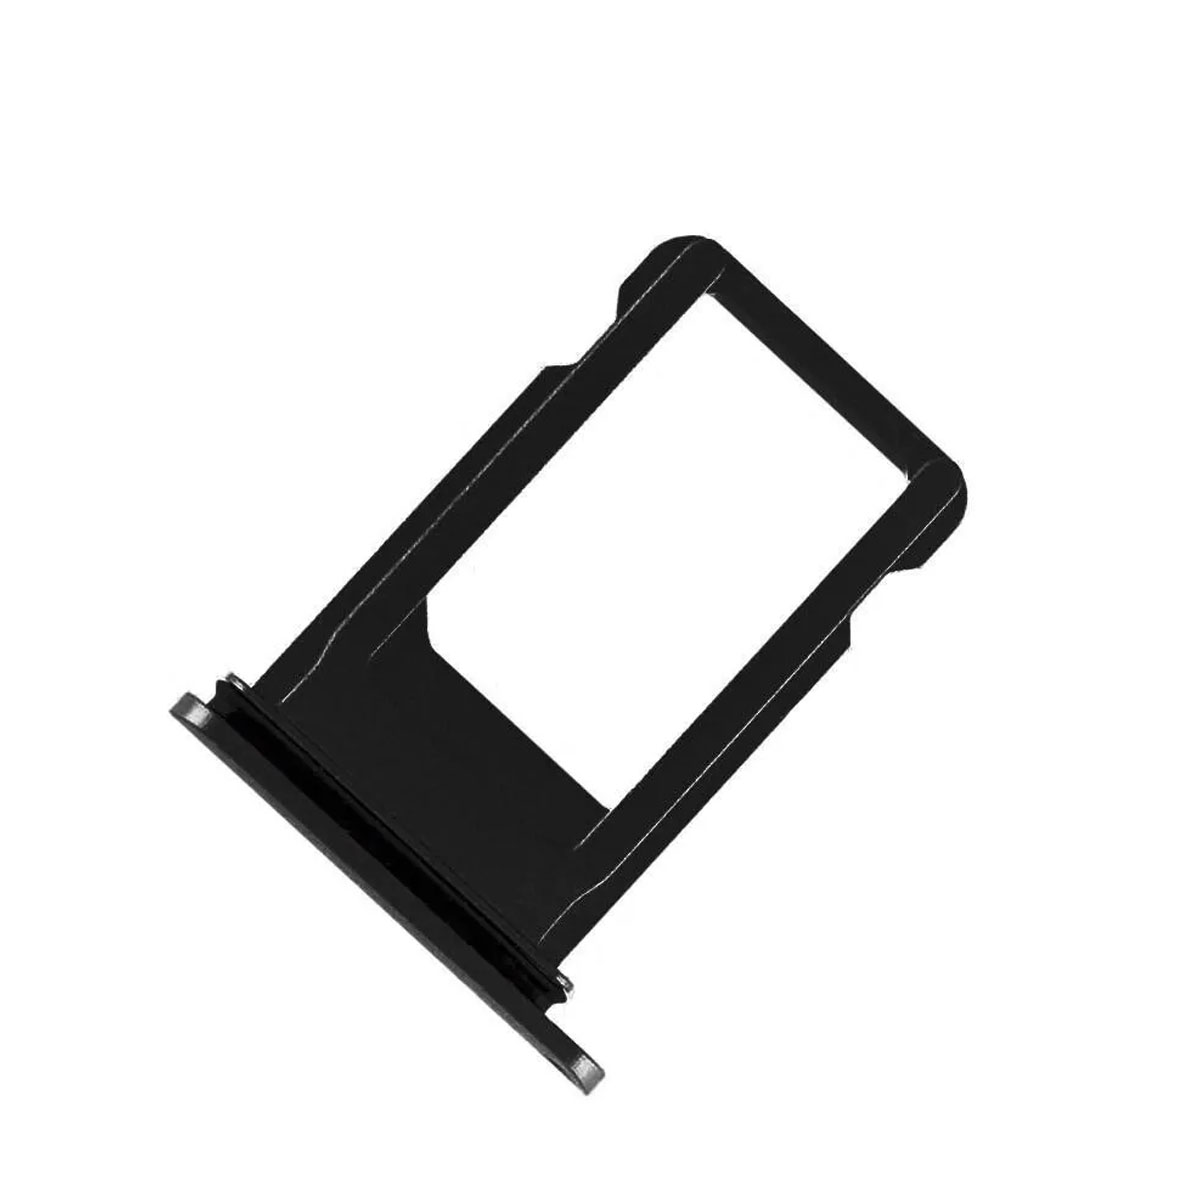 SIM лоток, держатель сим карты для APPLE iPhone 8, iPhone SE 2020, цвет черный